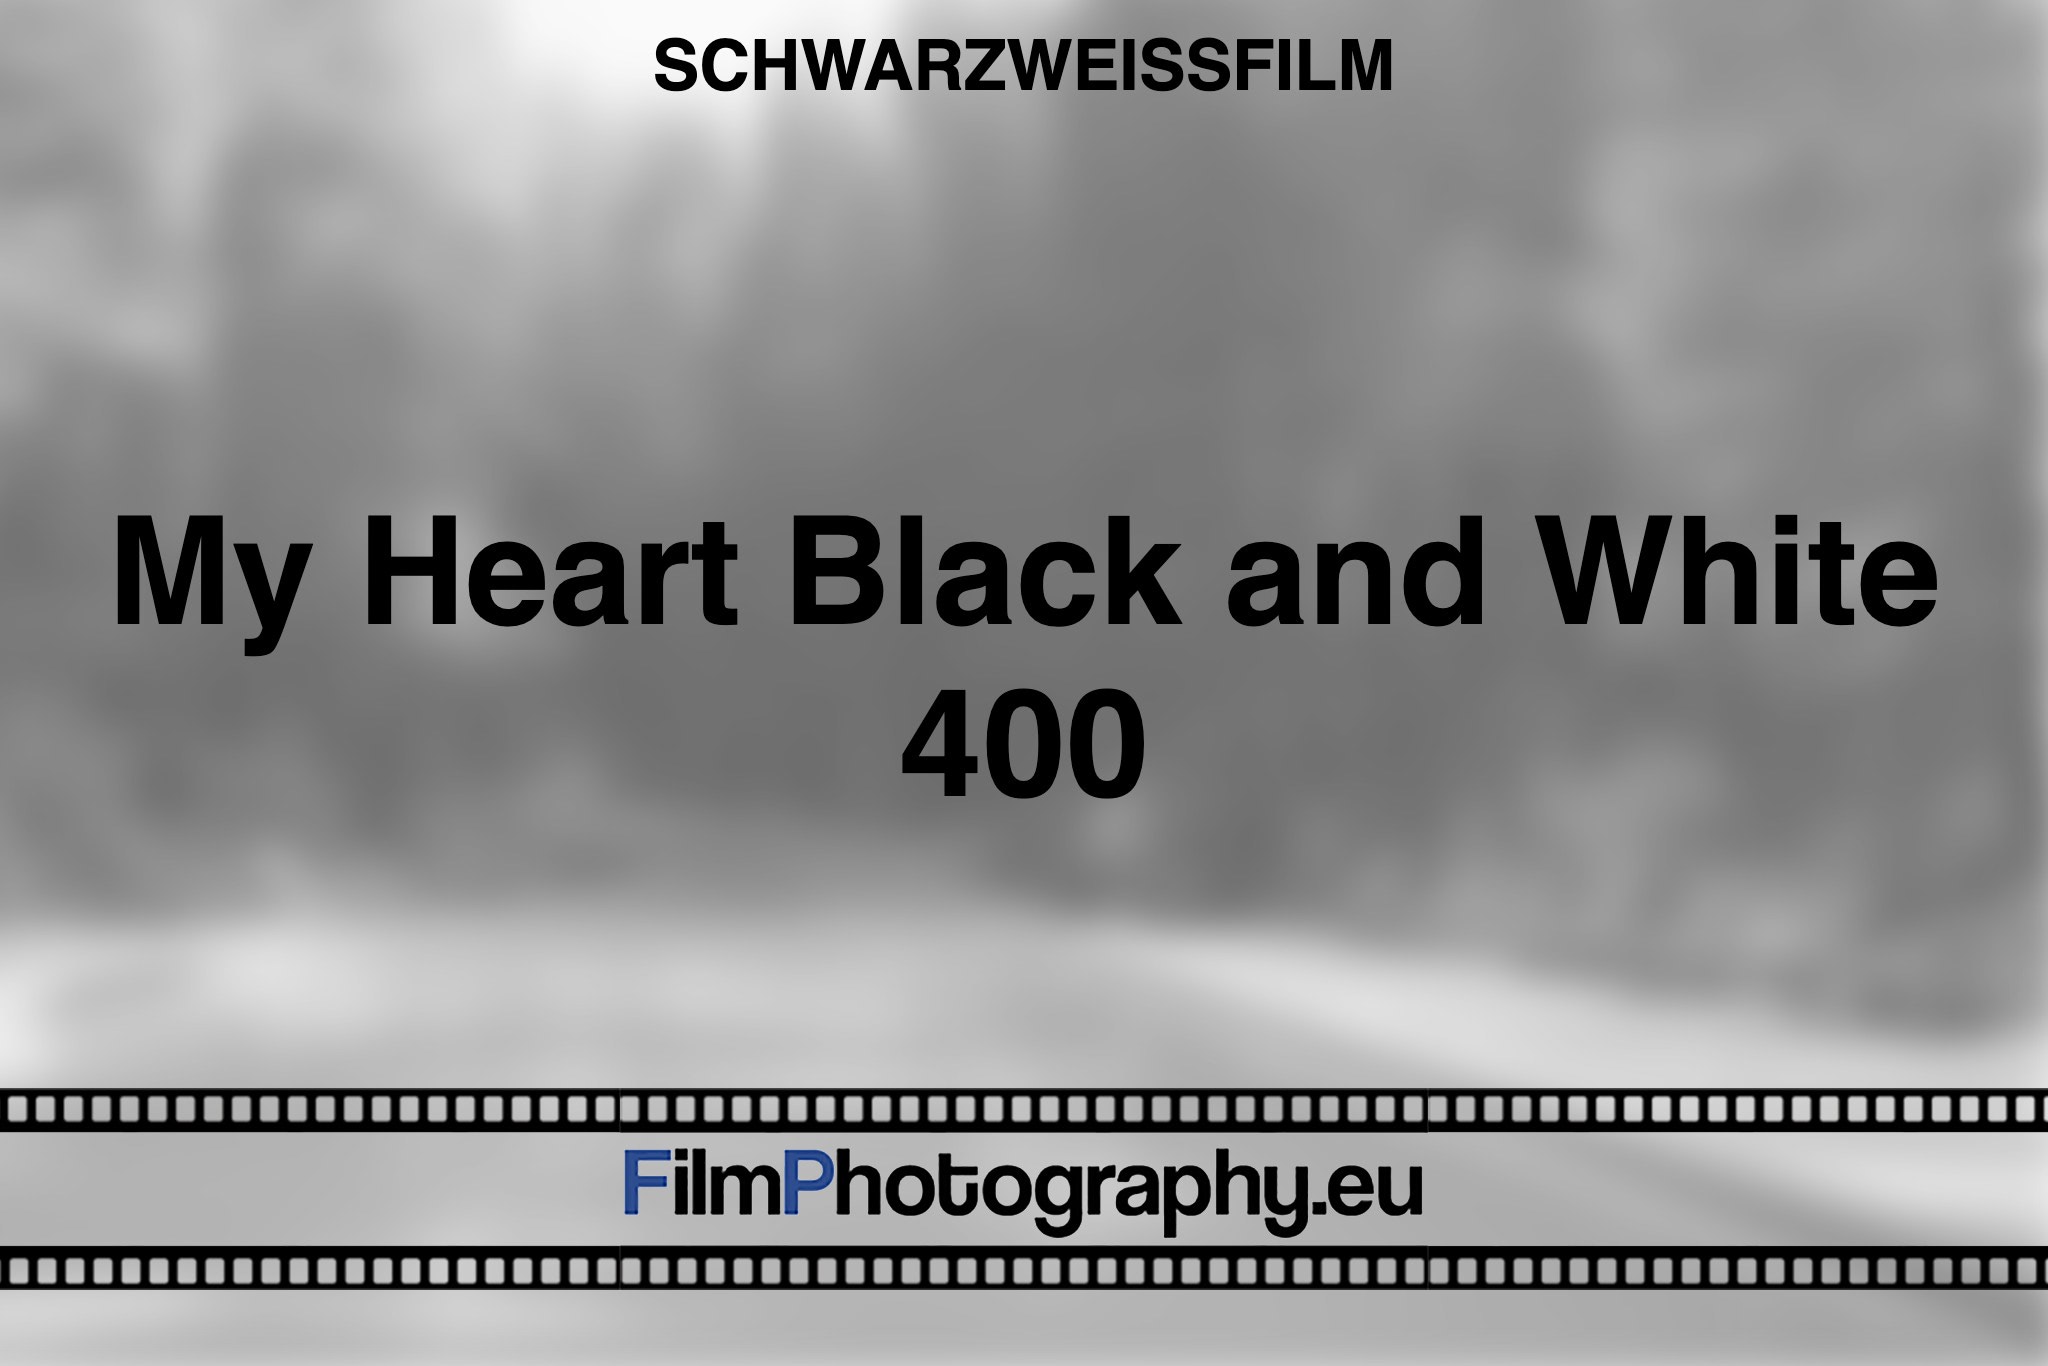 my-heart-black-and-white-400-schwarzweißfilm-bnv